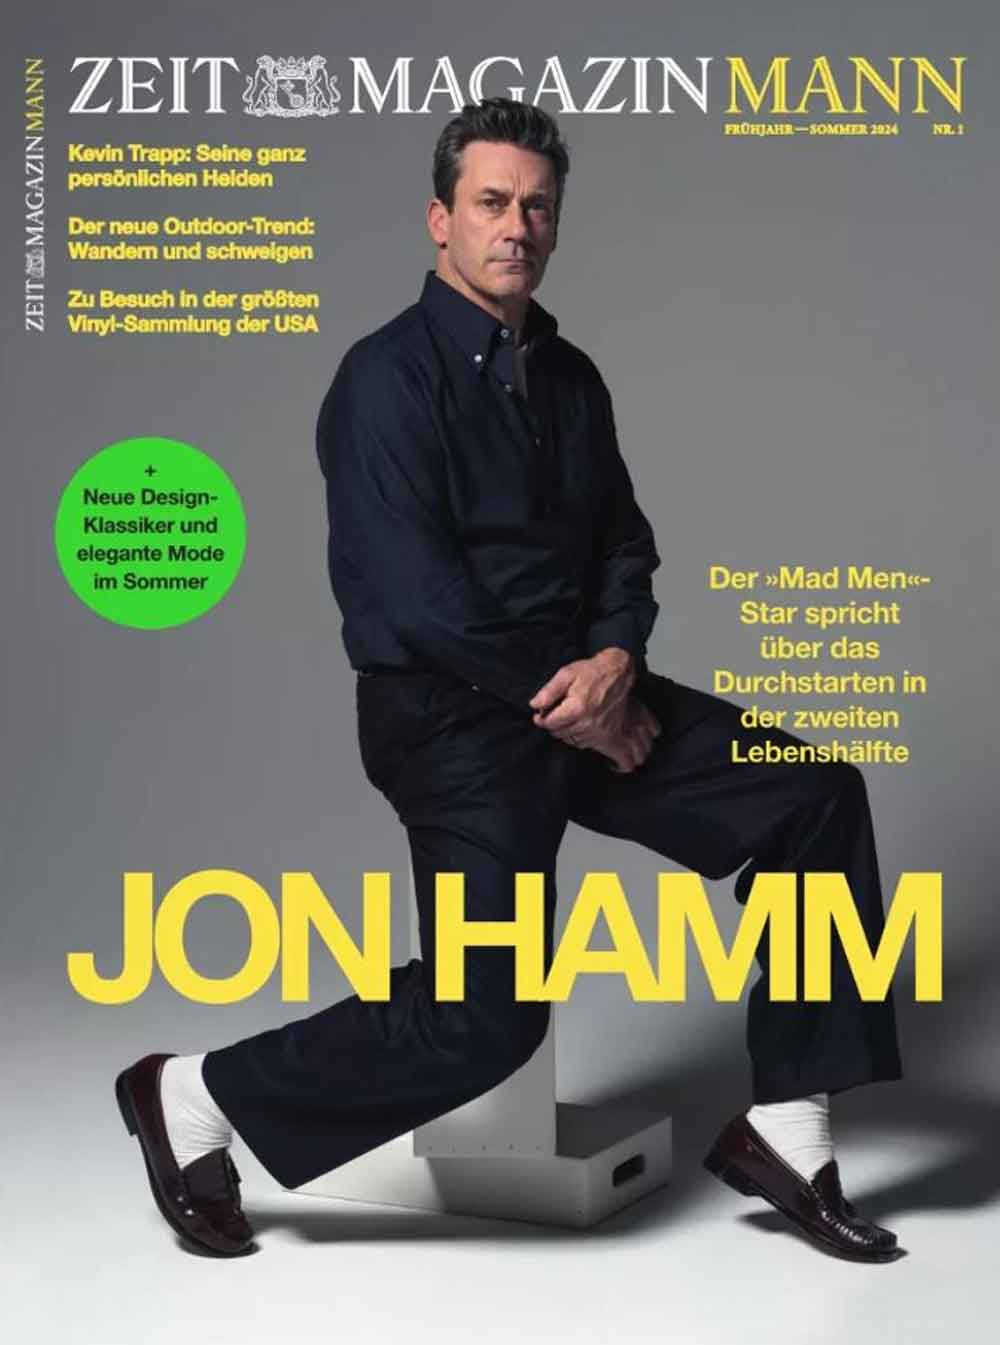 »Die Zeit«: »Mad Men« Schauspieler Jon Hamm: »Es ist schön, jenseits der 50 zu sein und zu merken: Es gibt tolle Figuren, die man spielen kann.«